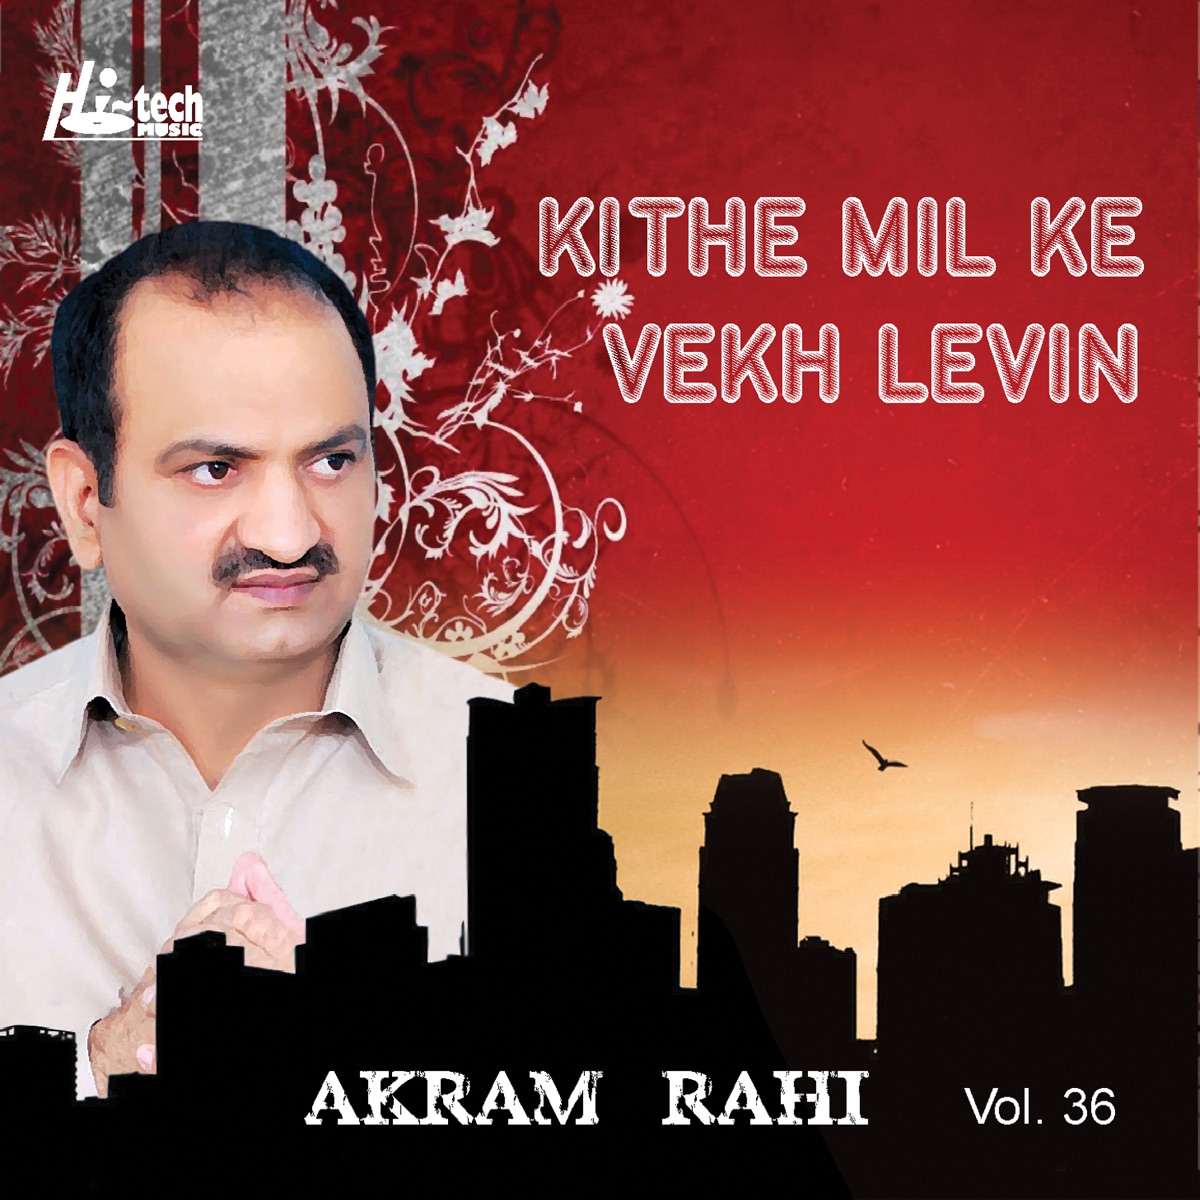 Sad Songs of Akram Rahi, Vol. 1 - Album by Akram Rahi - Apple Music